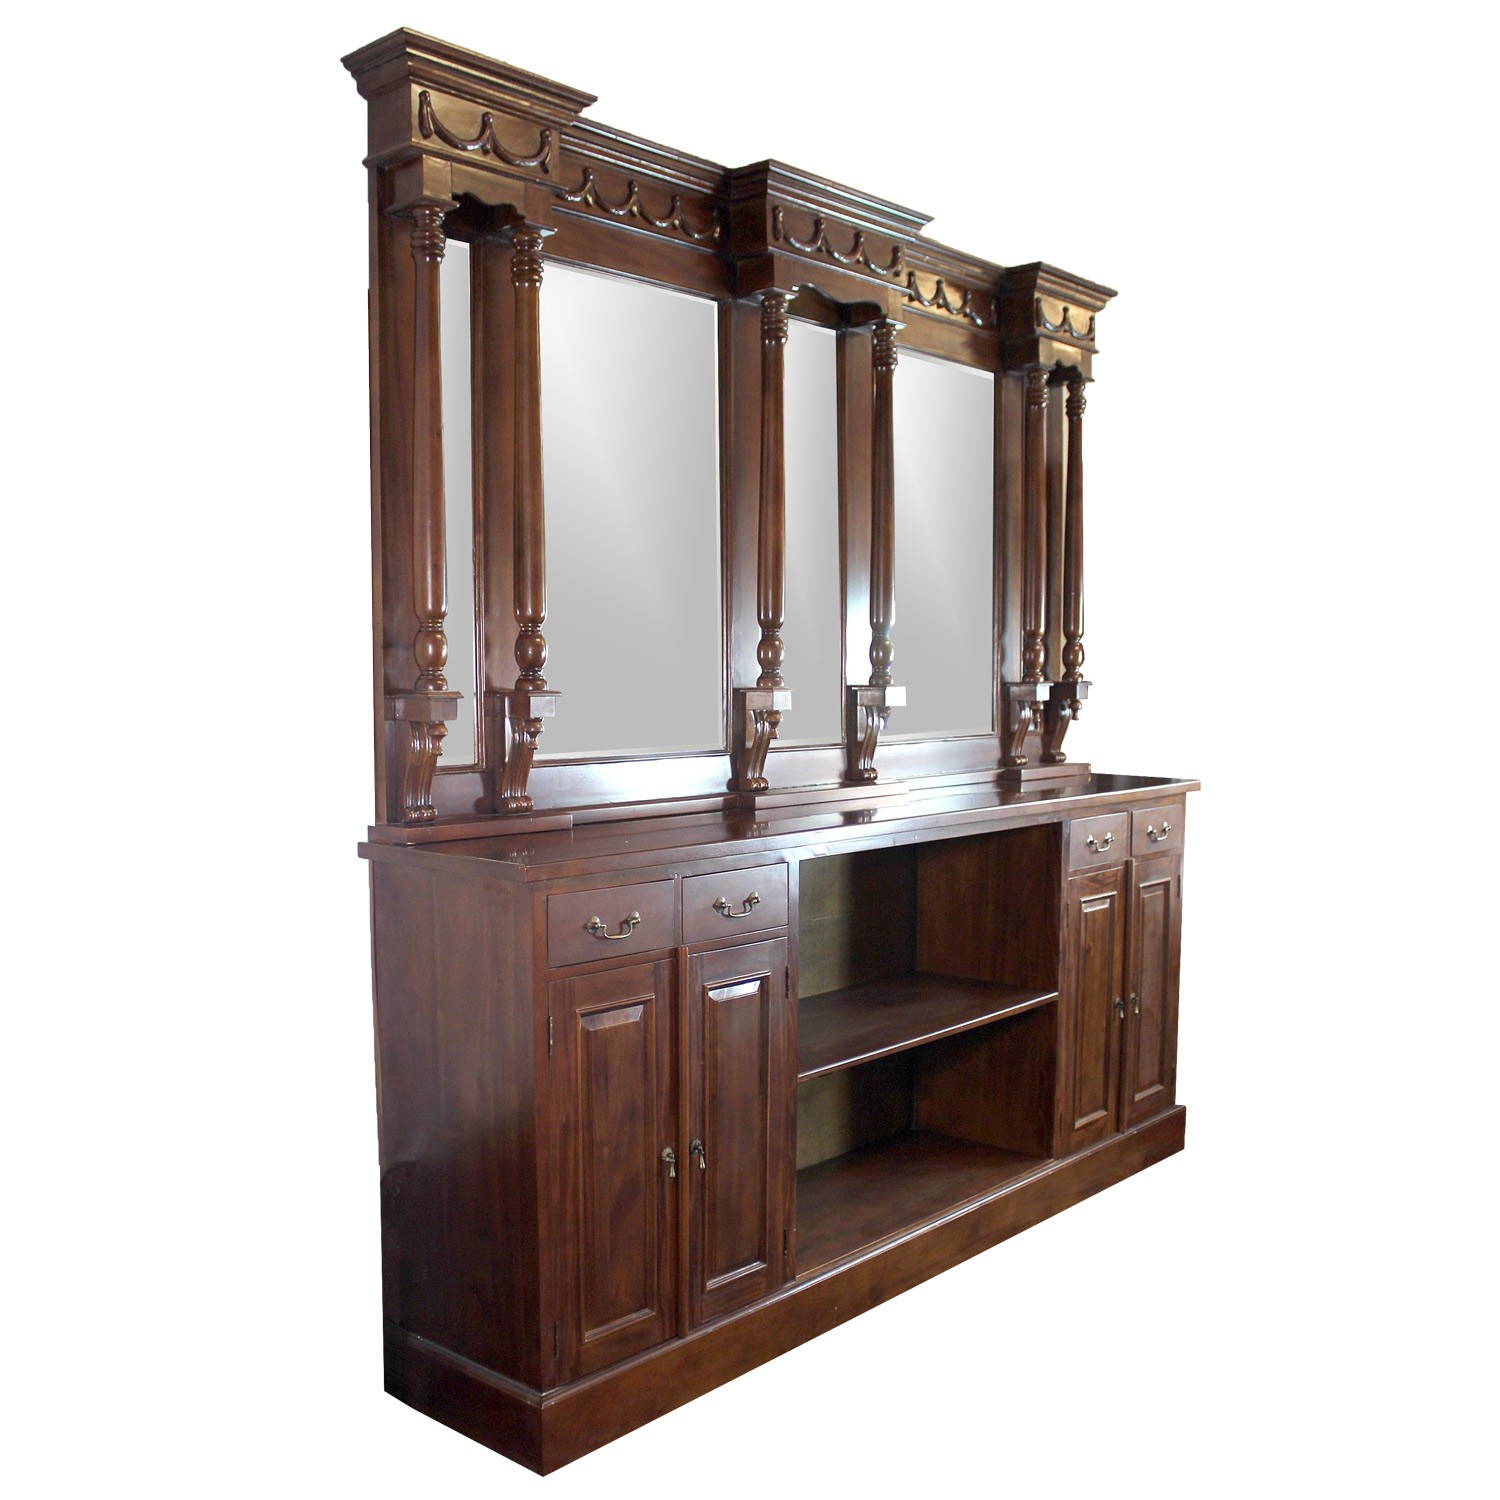 8 mahogany victorian back bar furniture antique replica